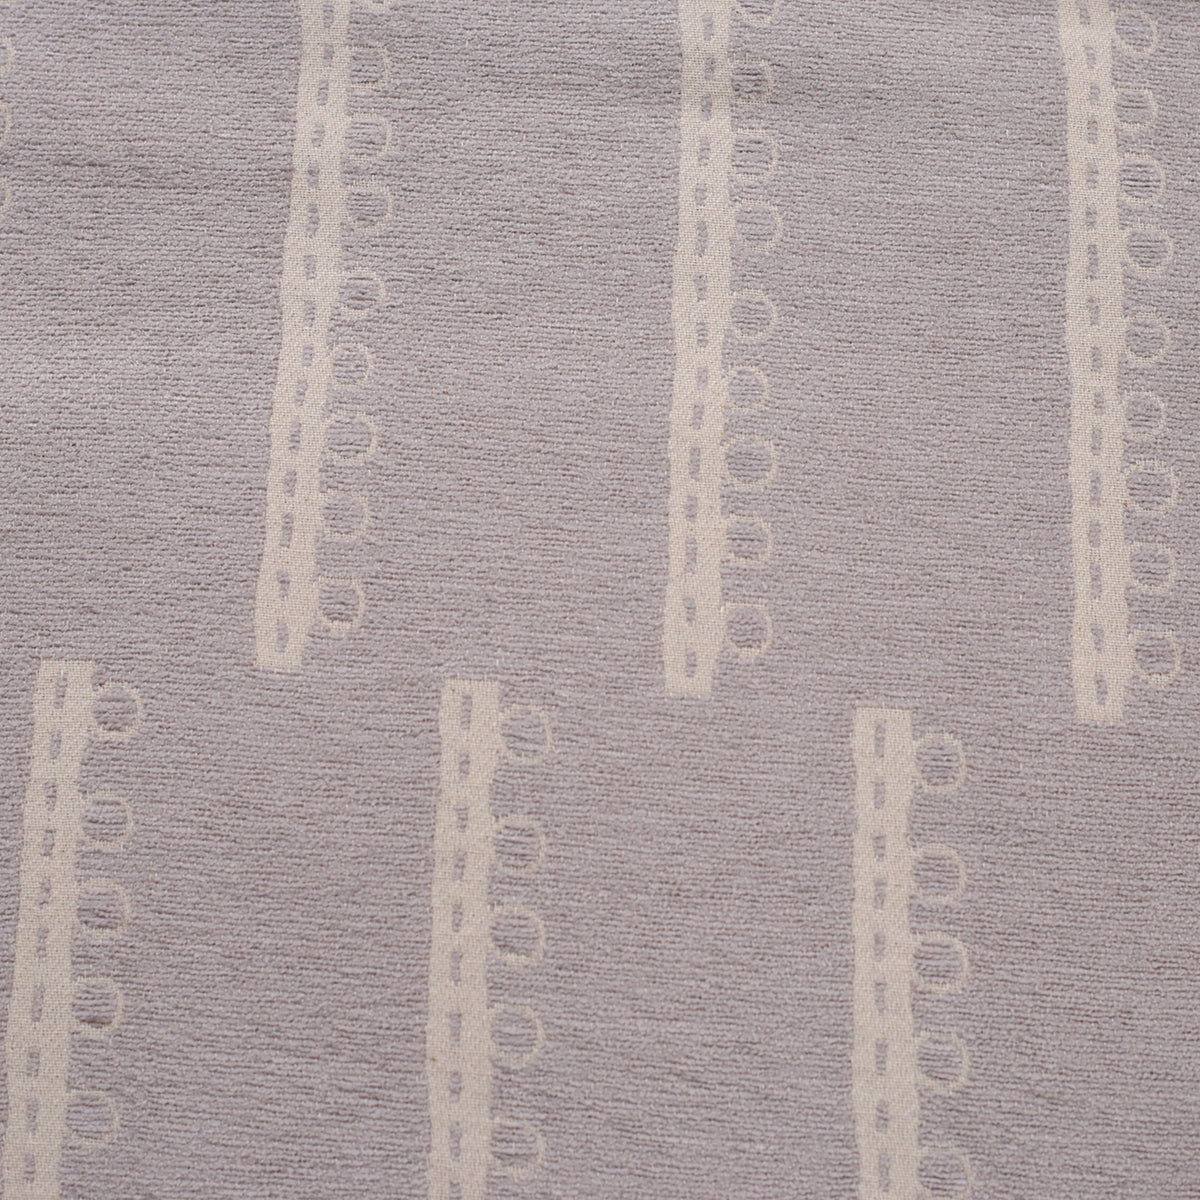 Exotic Heritage Ruler Dot Medium Grey Bed Cover/Blanket Set